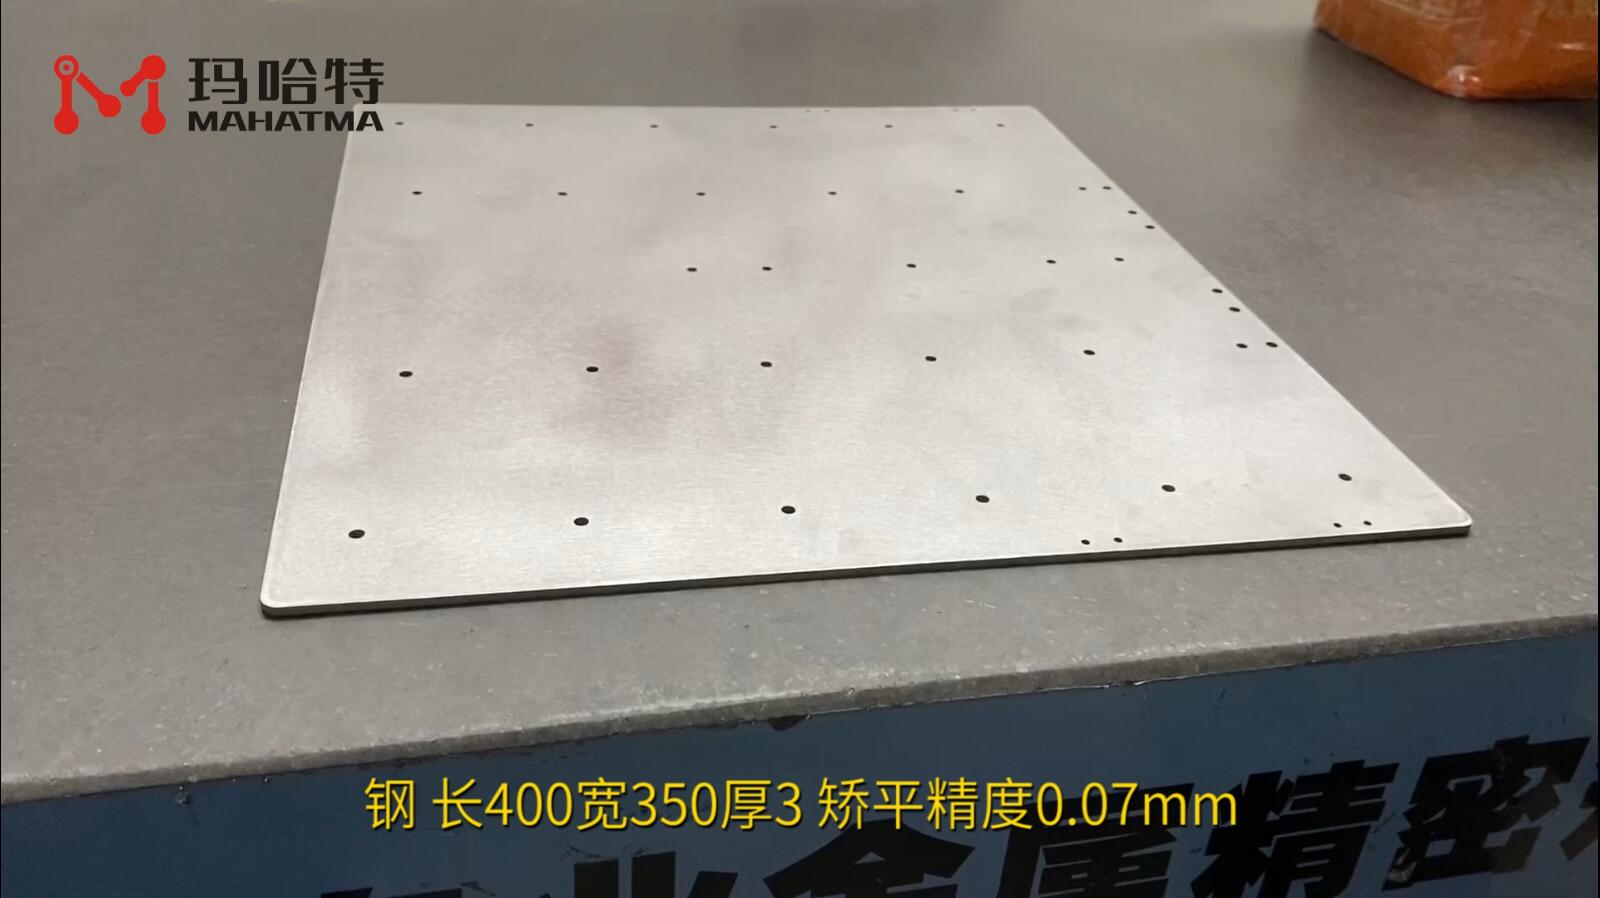 钢 MHT80-800 长方形 长400宽350厚3 矫平精度0.07mm